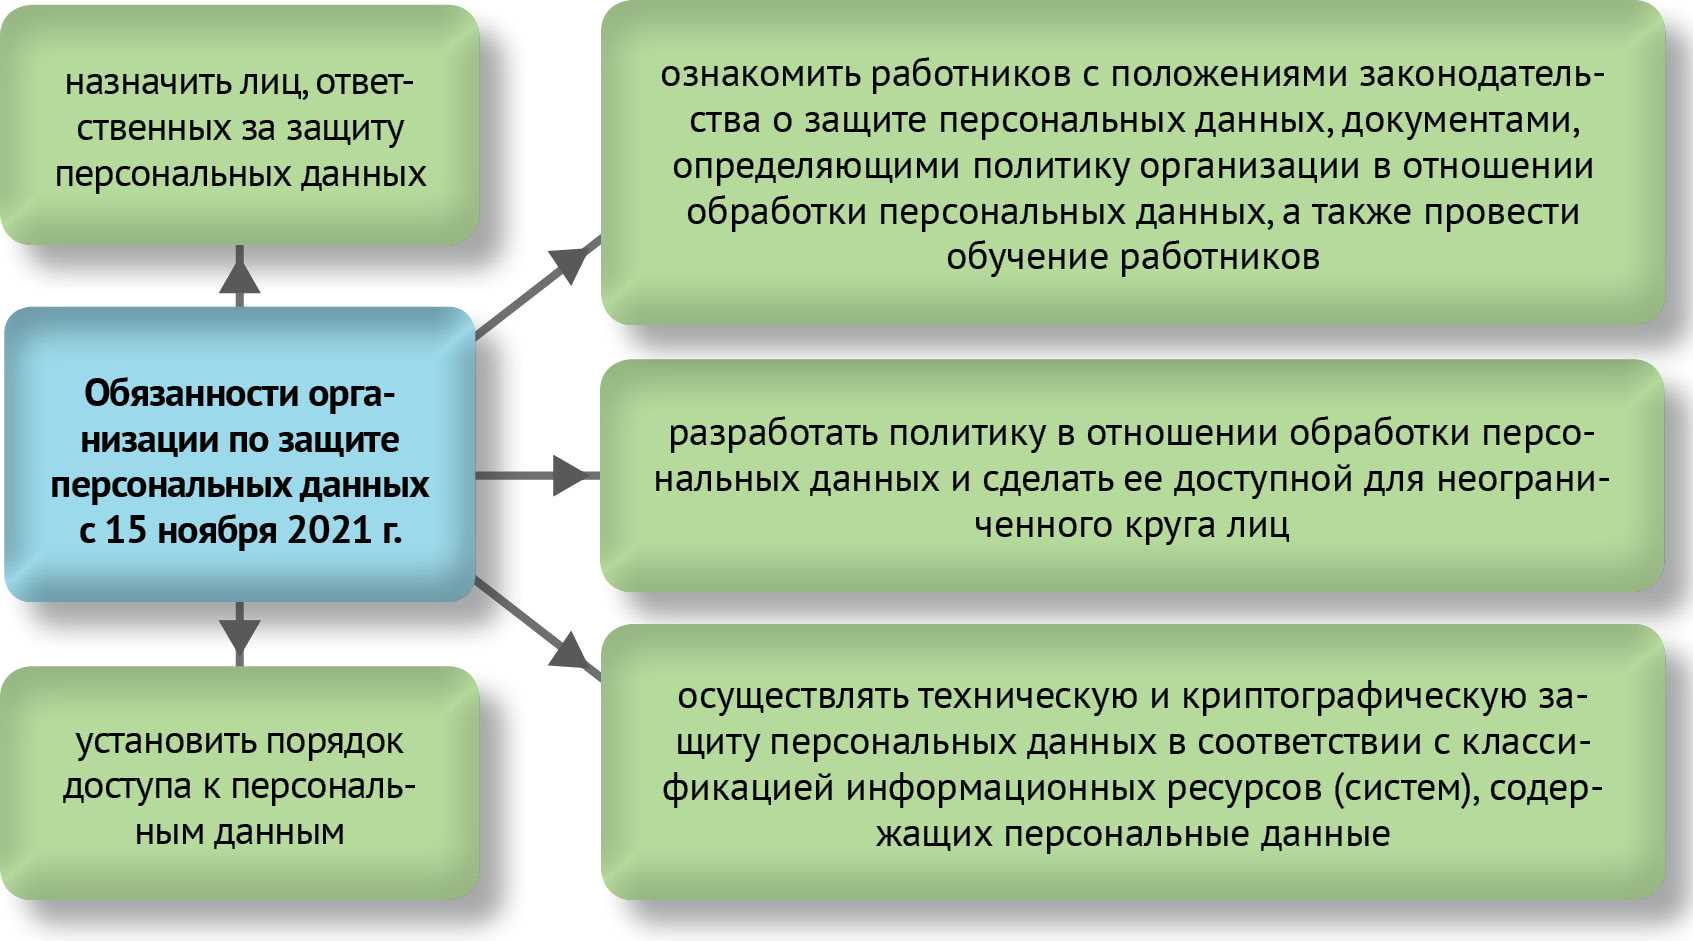 О защите персональных данных в Республике Беларусь: основные положения закона